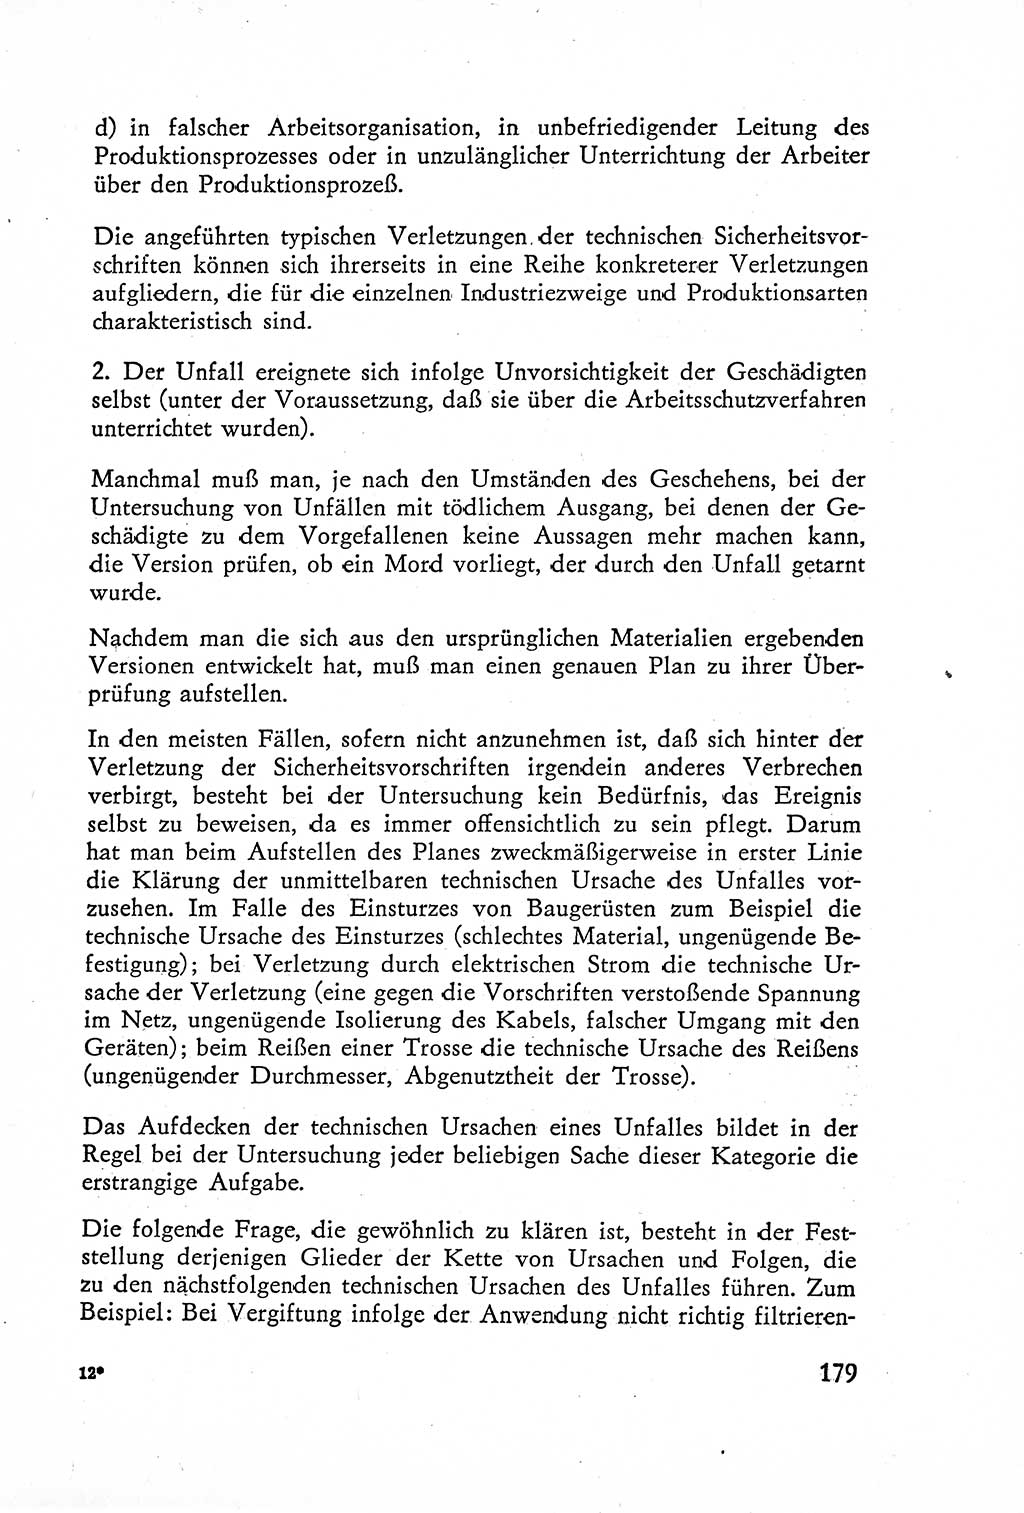 Die Untersuchung einzelner Verbrechensarten [Deutsche Demokratische Republik (DDR)] 1960, Seite 179 (Unters. Verbr.-Art. DDR 1960, S. 179)